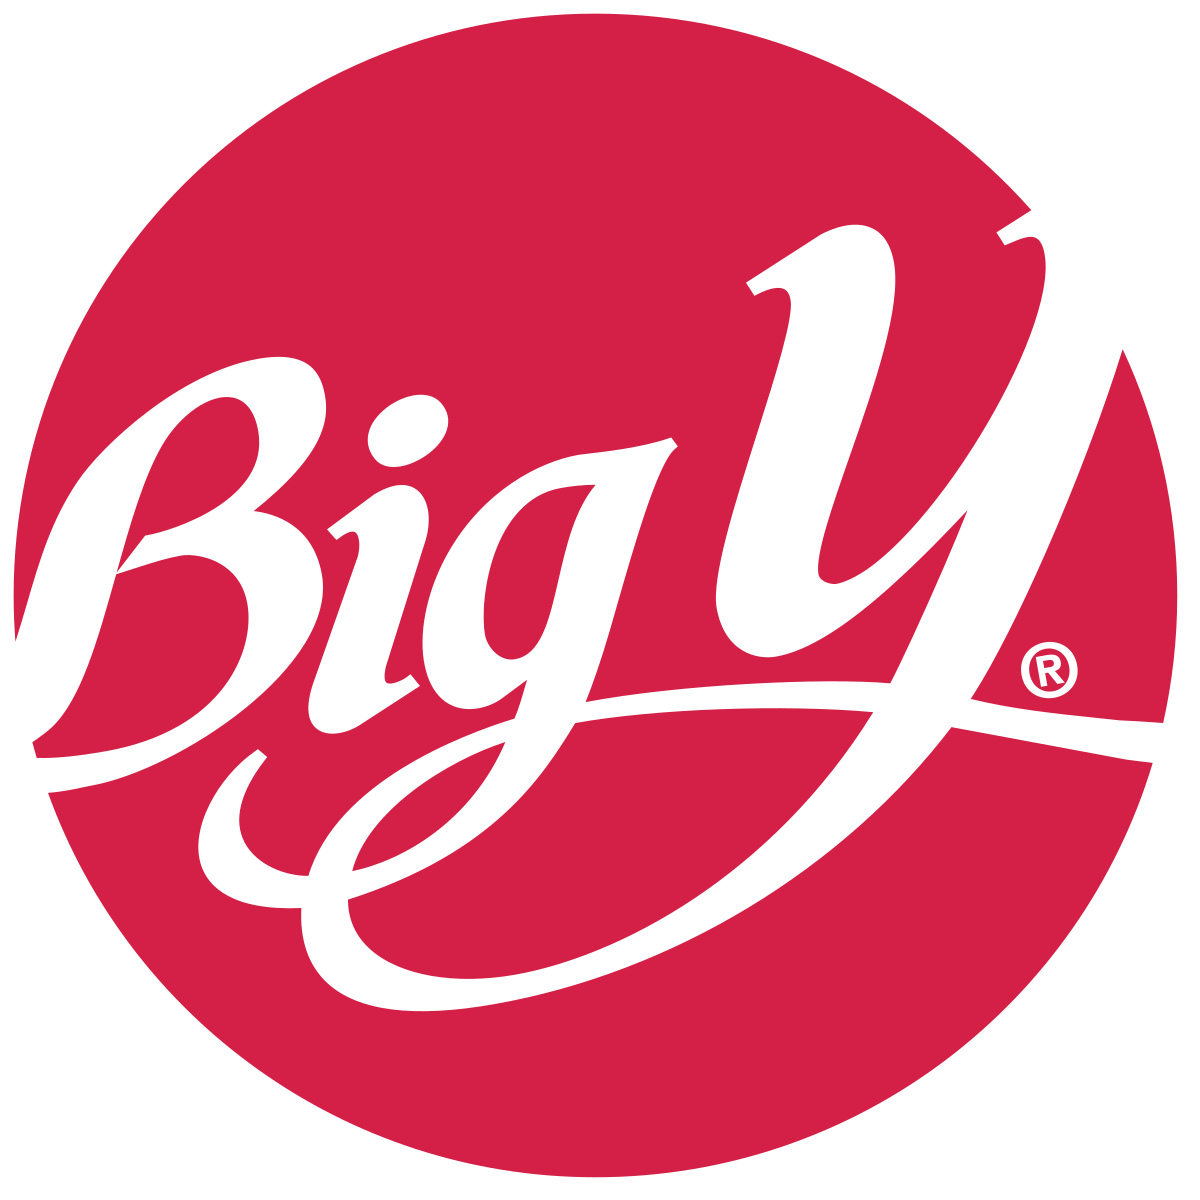 Big Y Foods logo